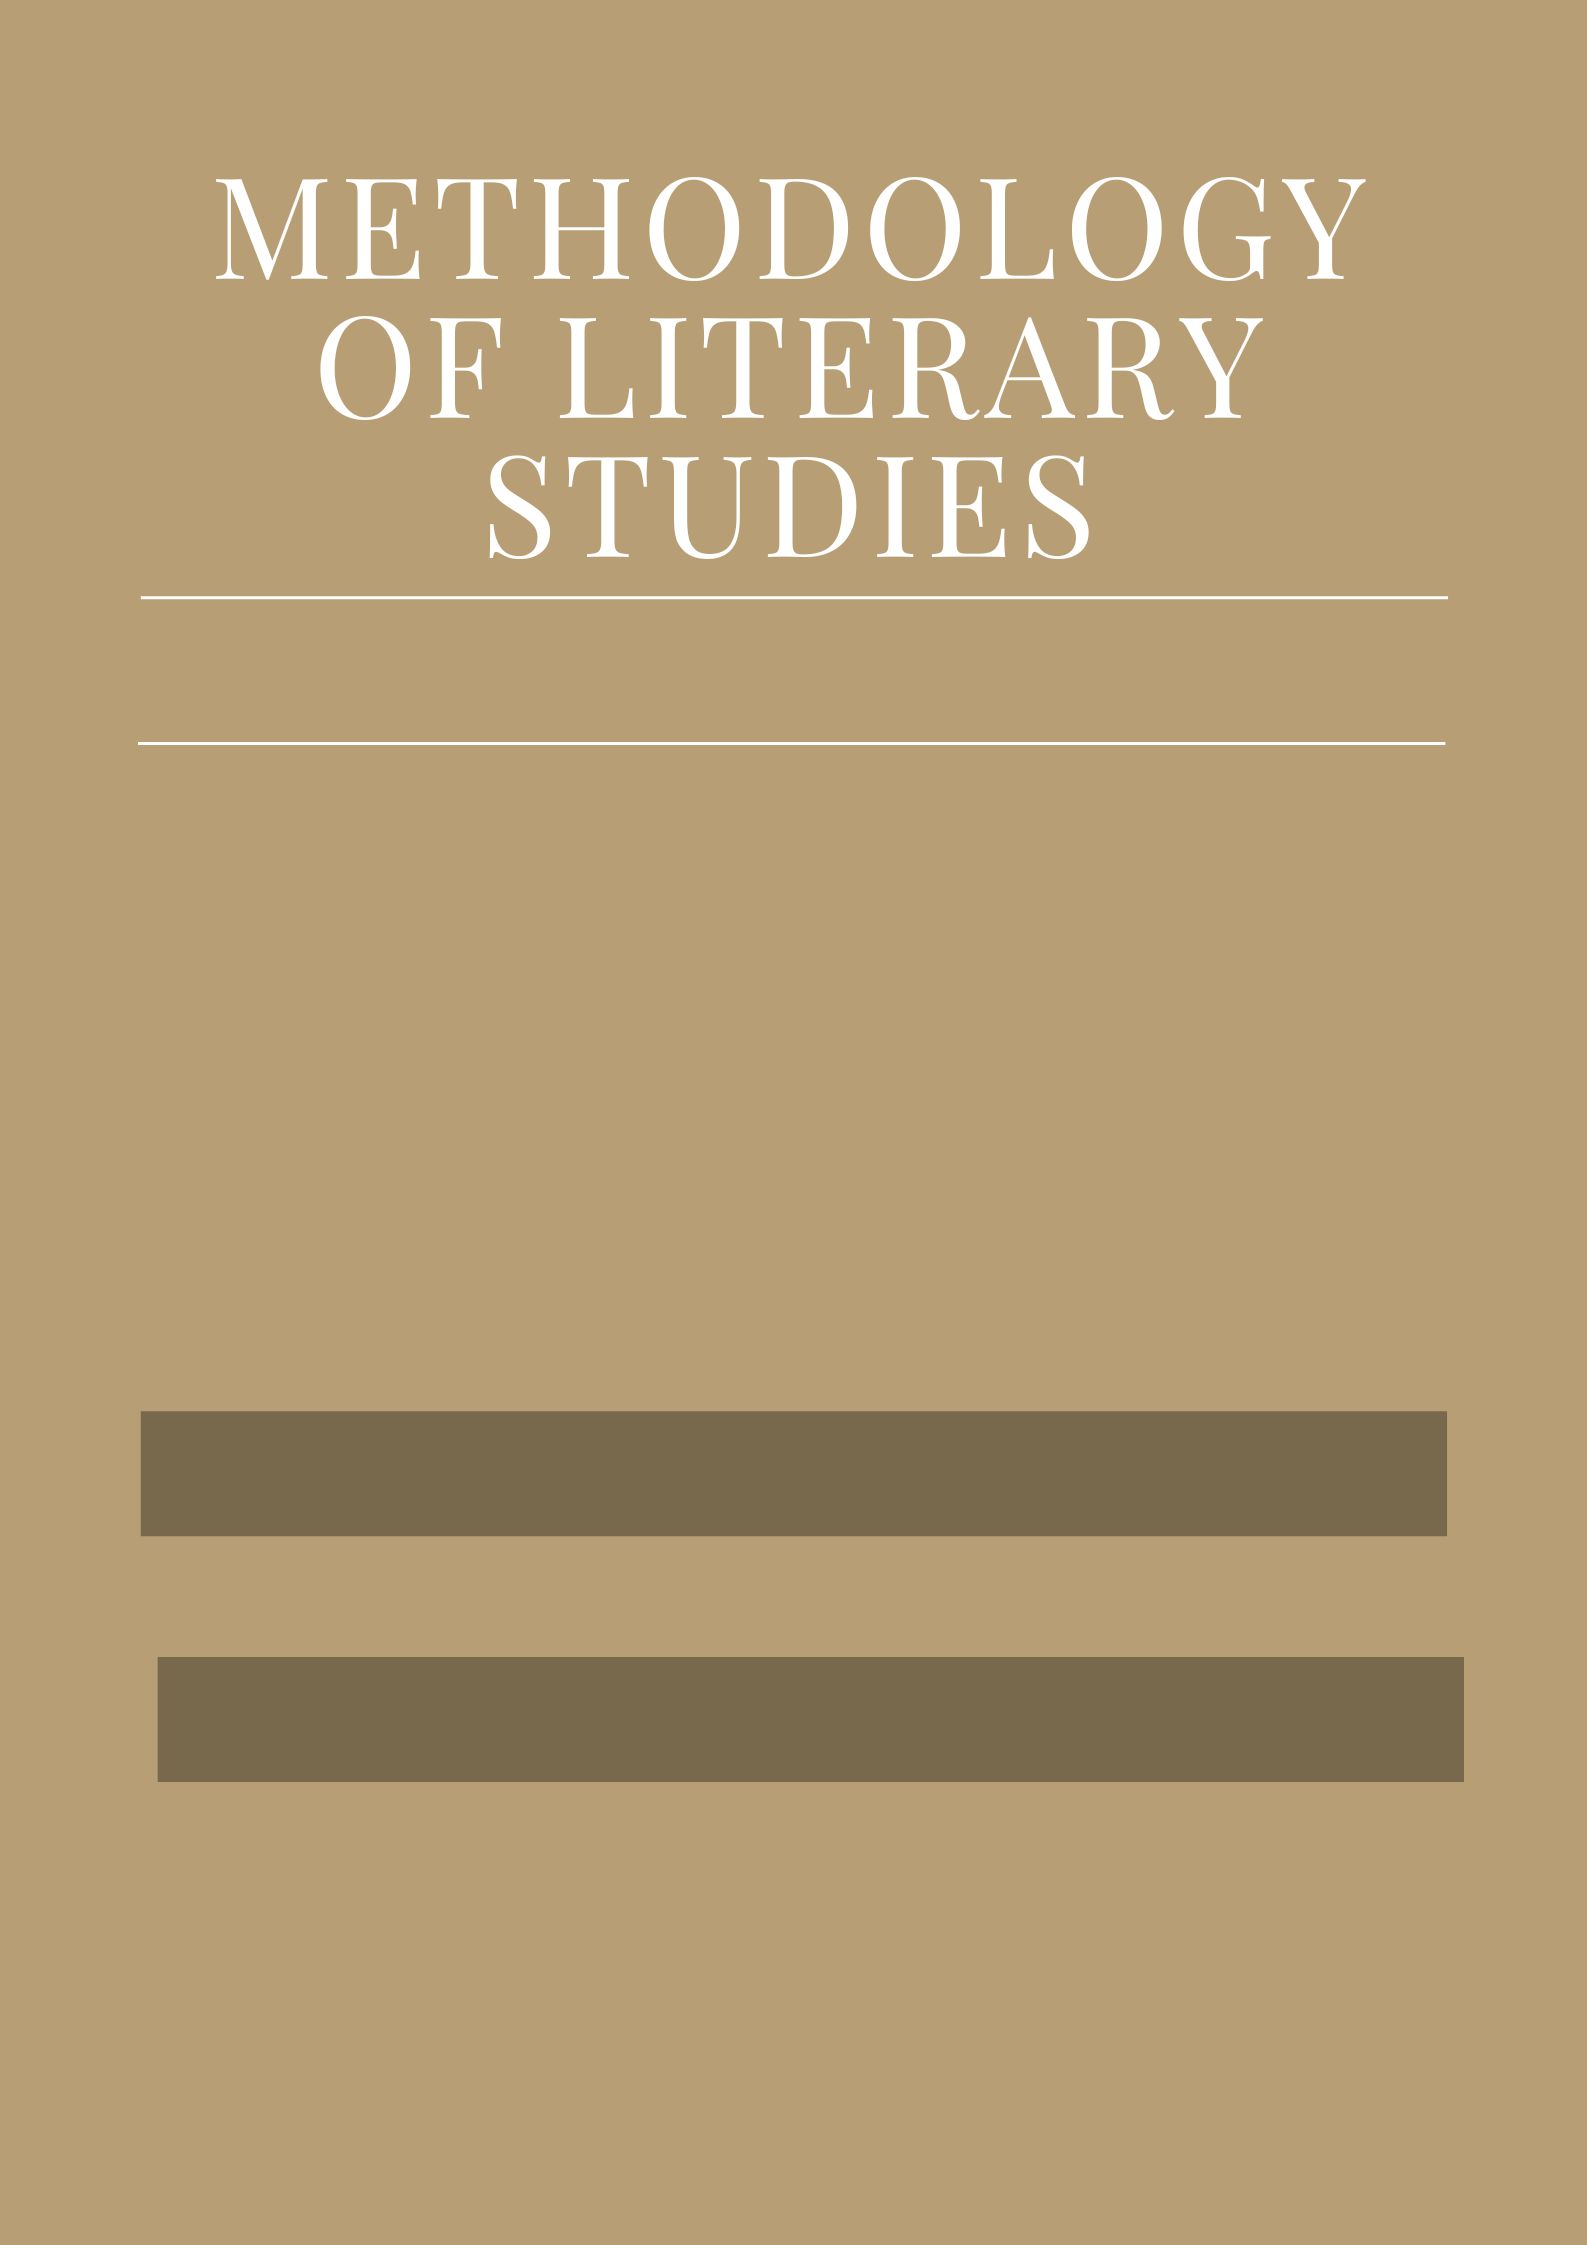 Methodology of Literary Studies 2021